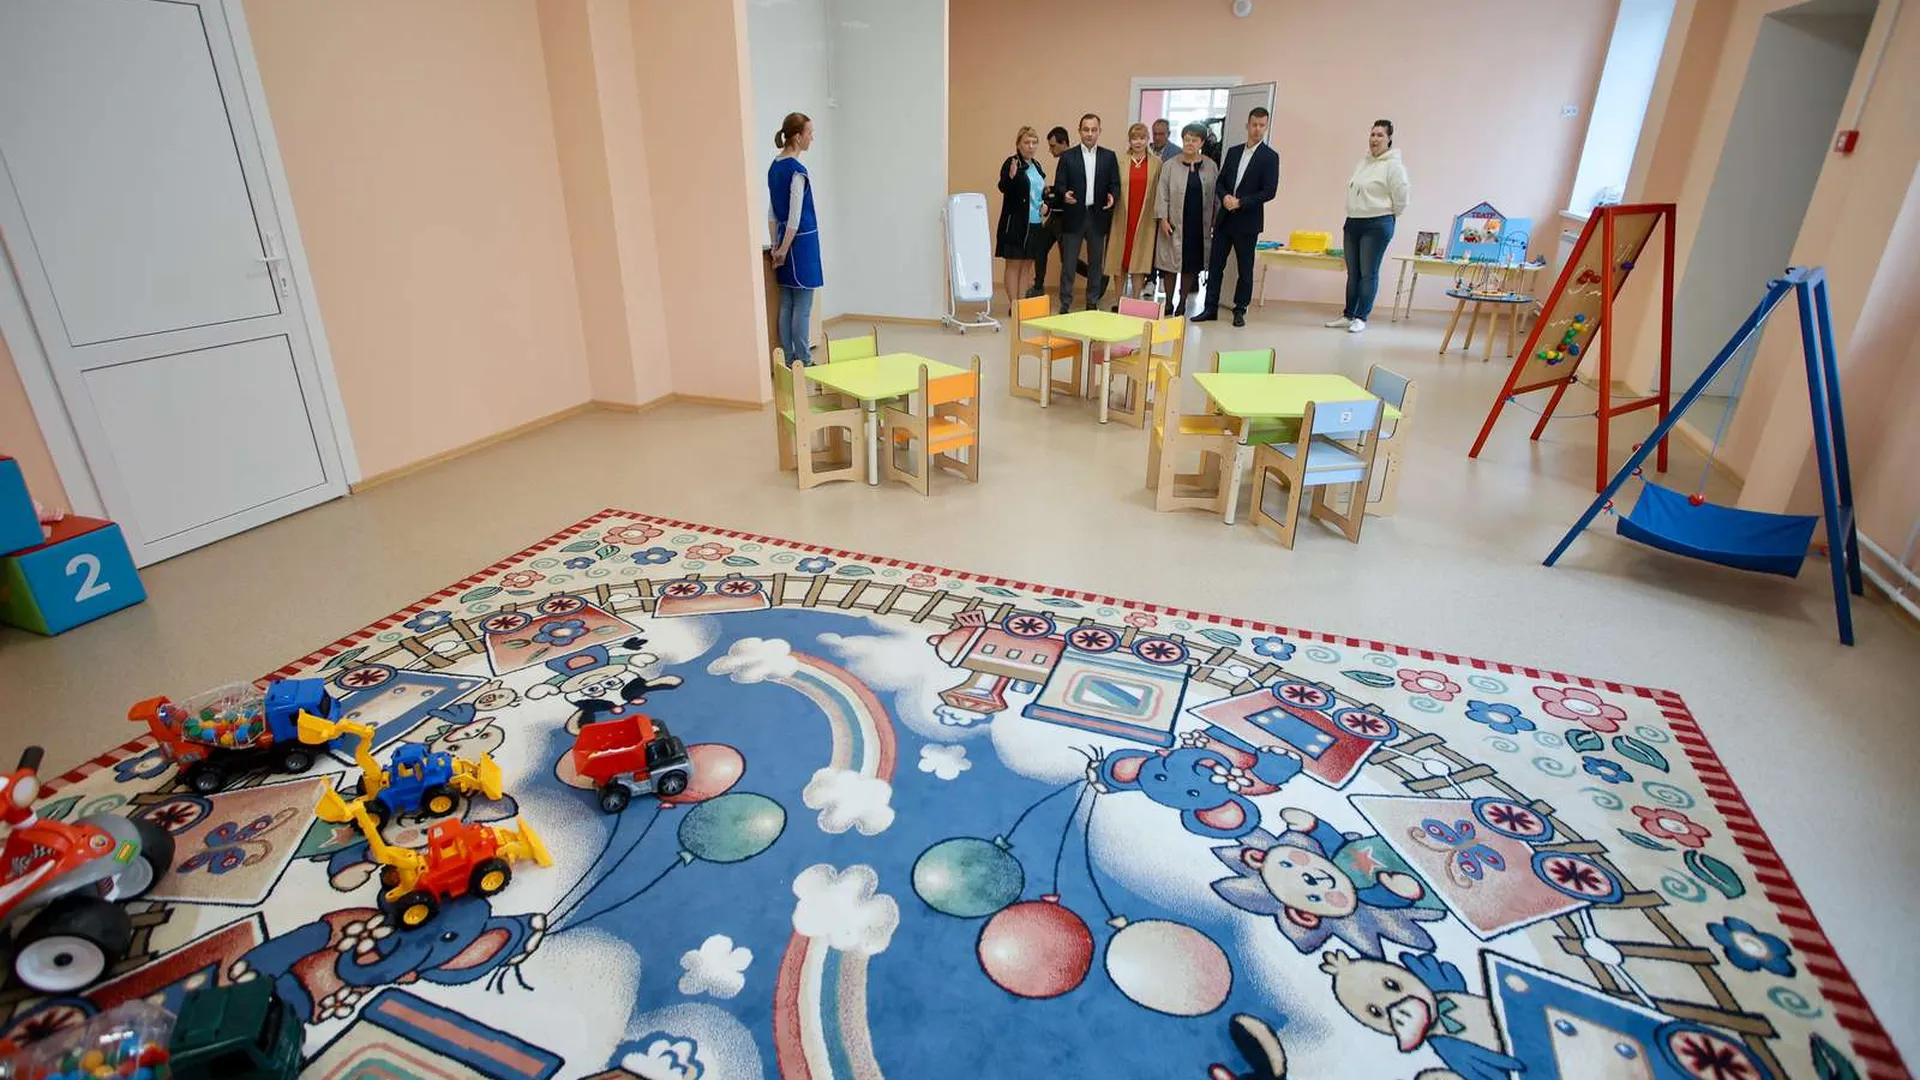 Новый детский сад откроют в микрорайоне Железнодорожный в Балашихе 1 сентября